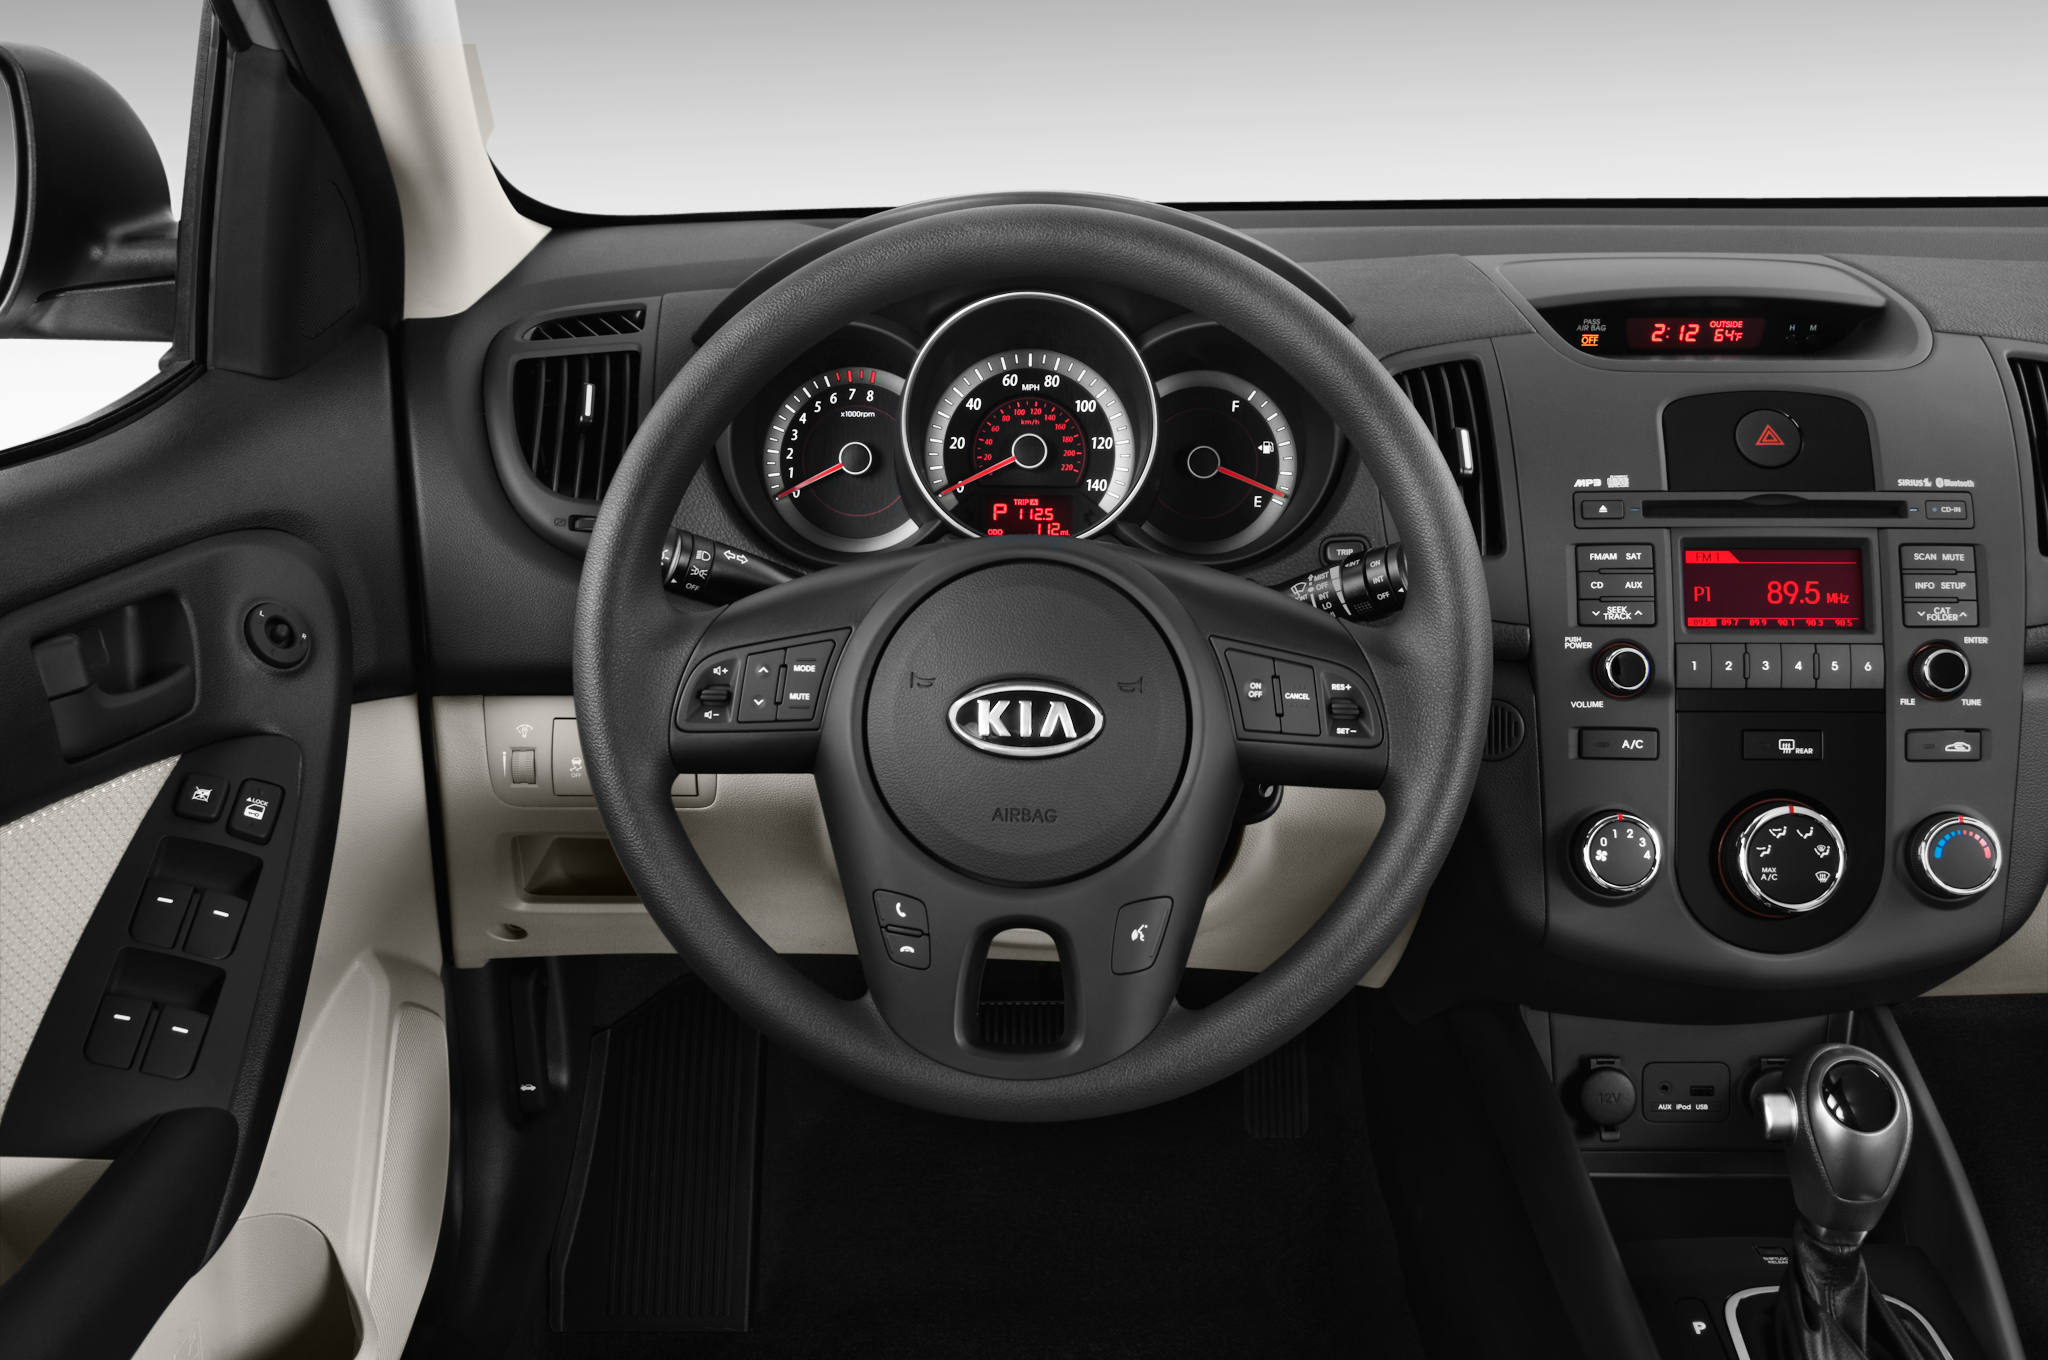 Kia Forte I 2008 - 2013 Hatchback 5 door :: OUTSTANDING CARS